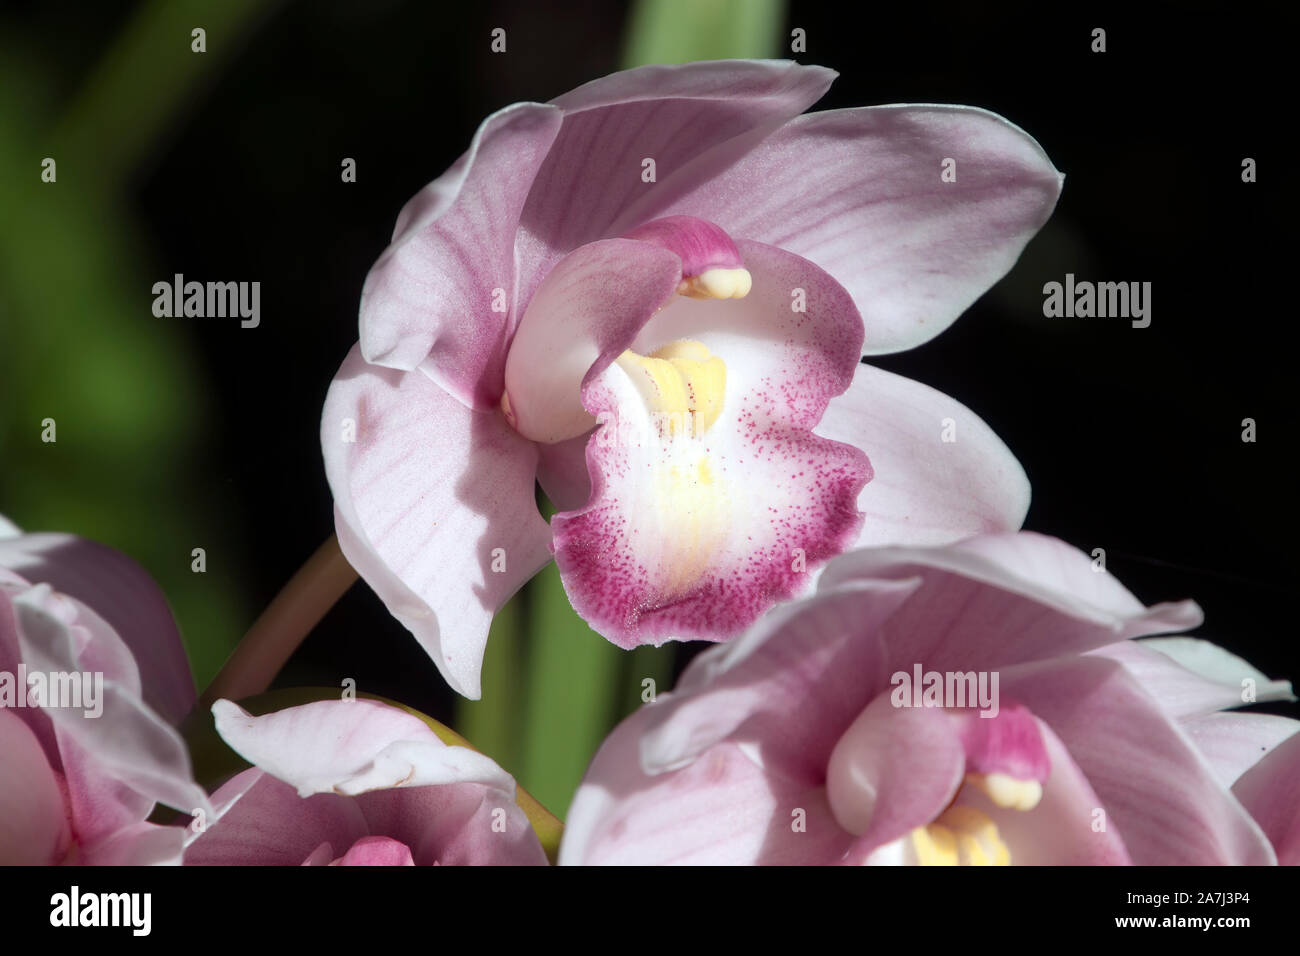 Sydney Australia, stem of pale mauve orchid flowers Stock Photo